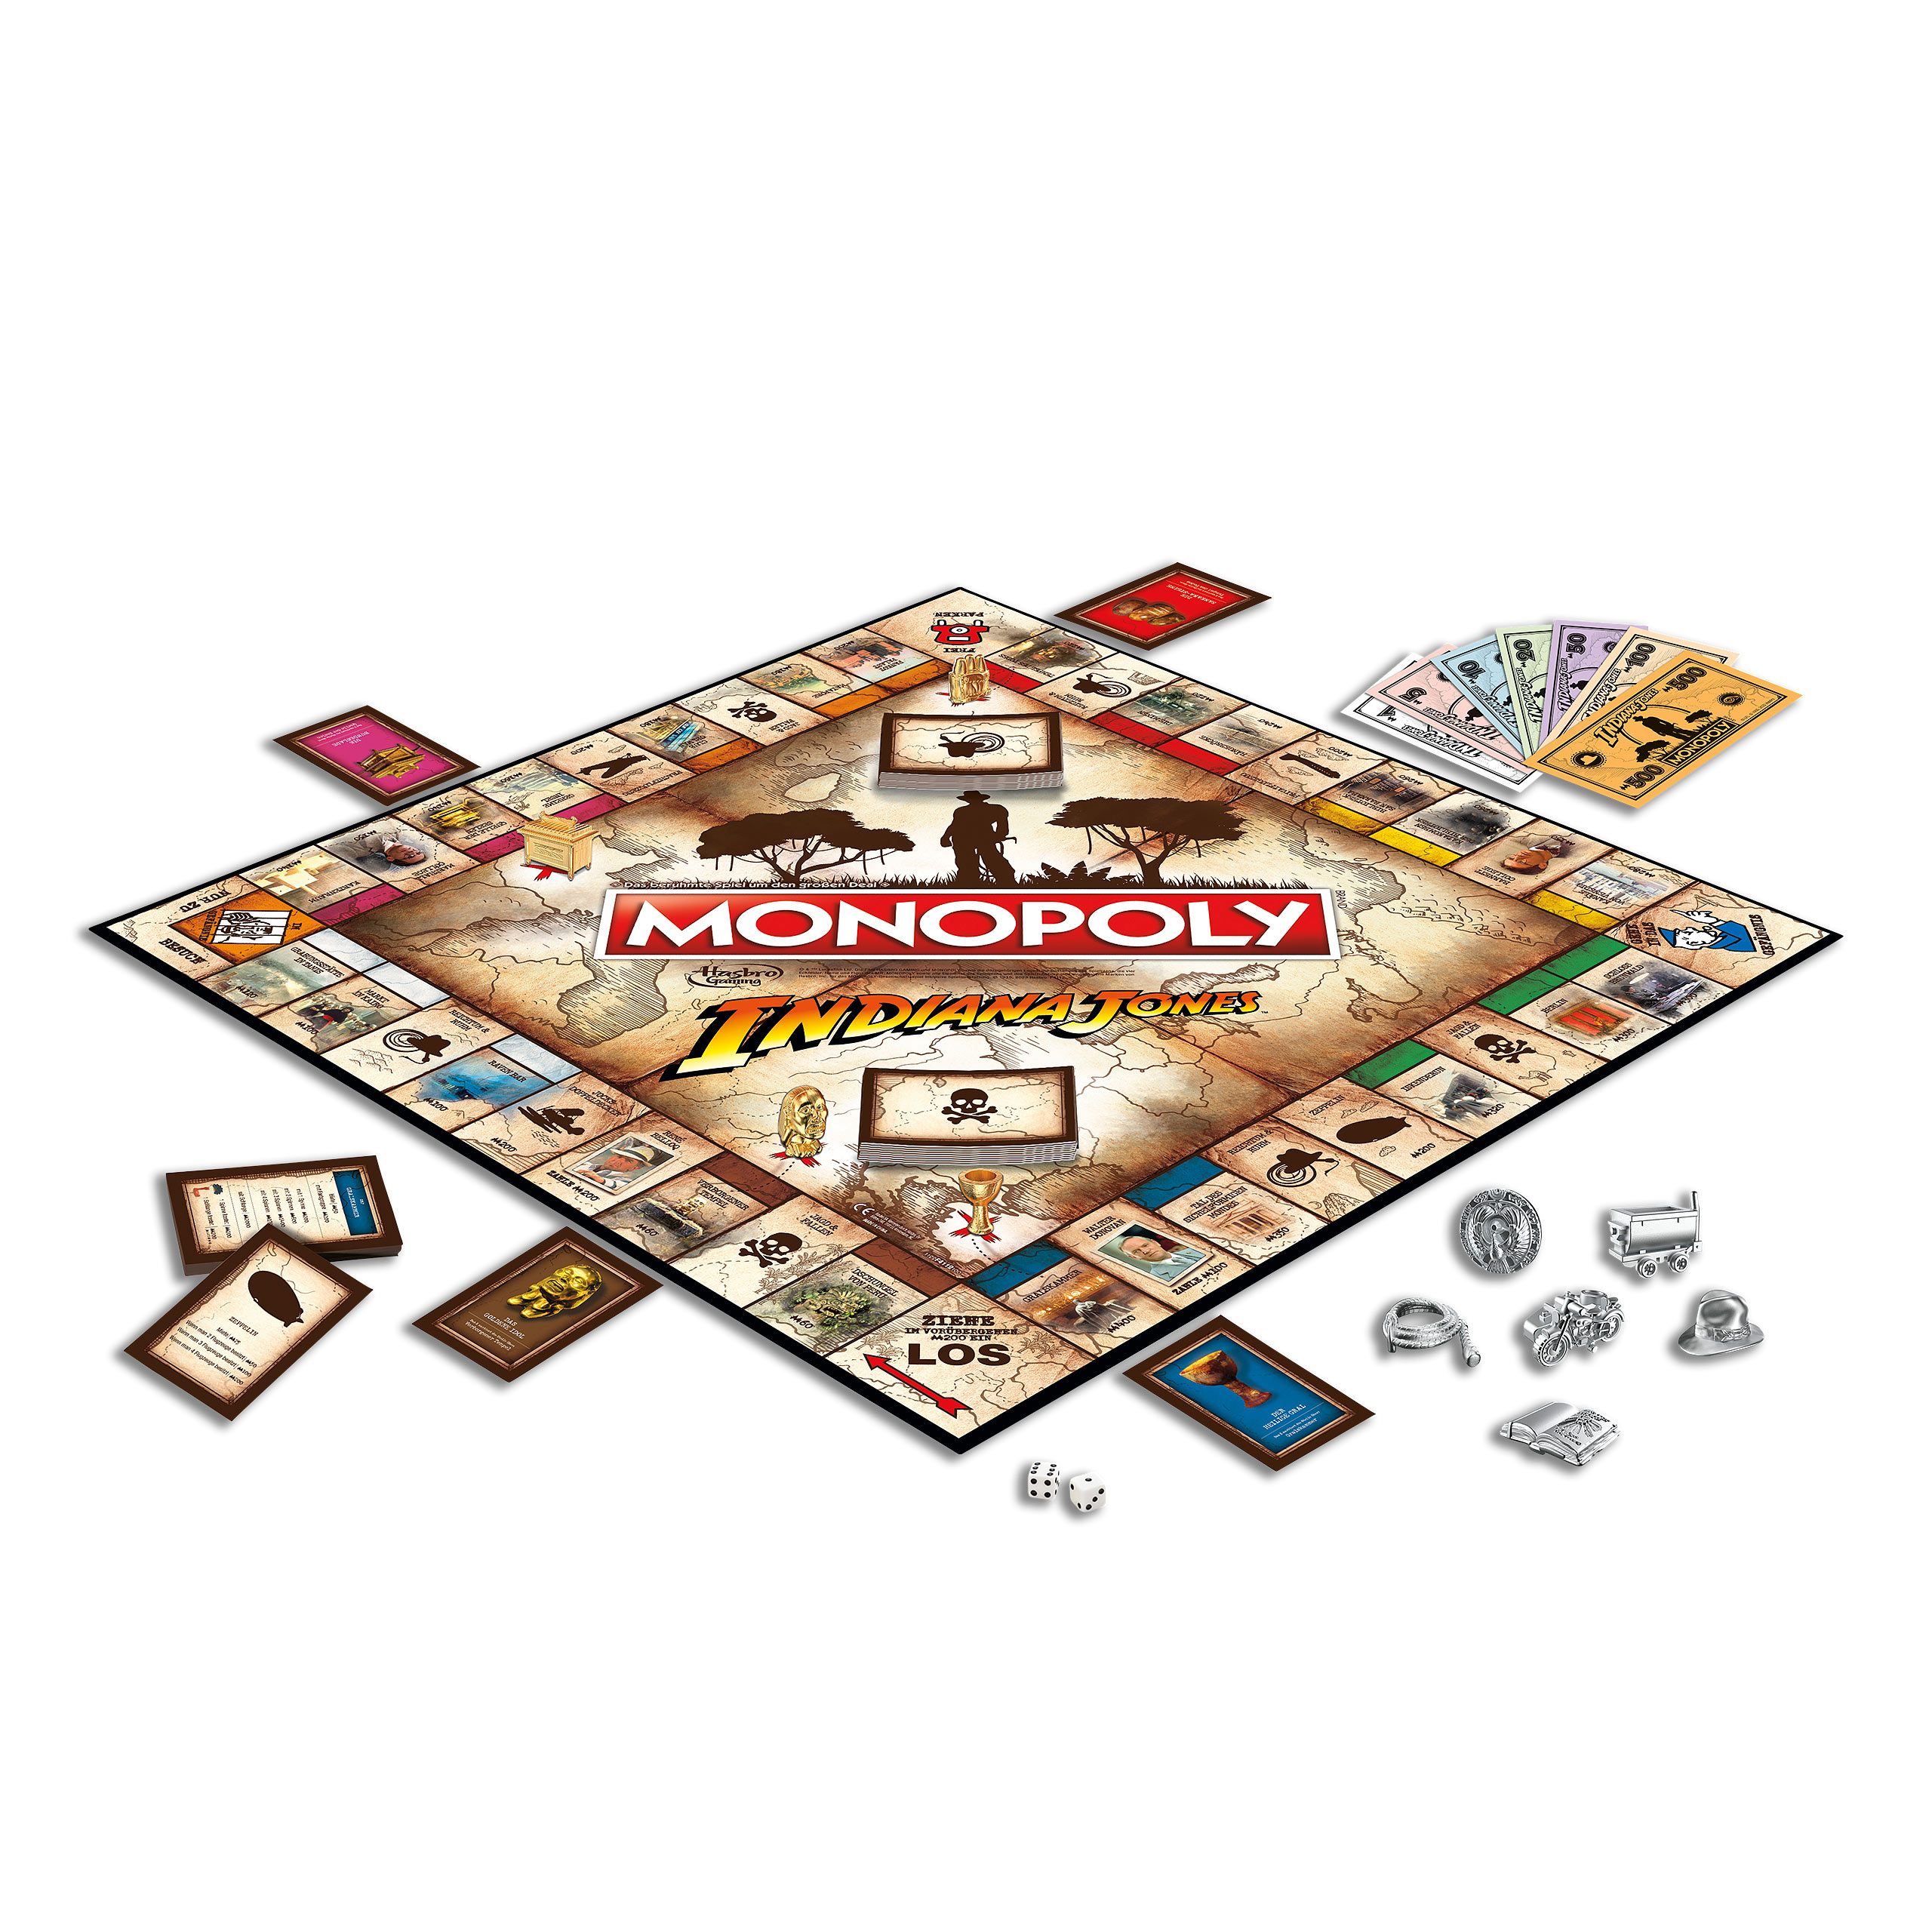 Indiana Jones - Monopoly